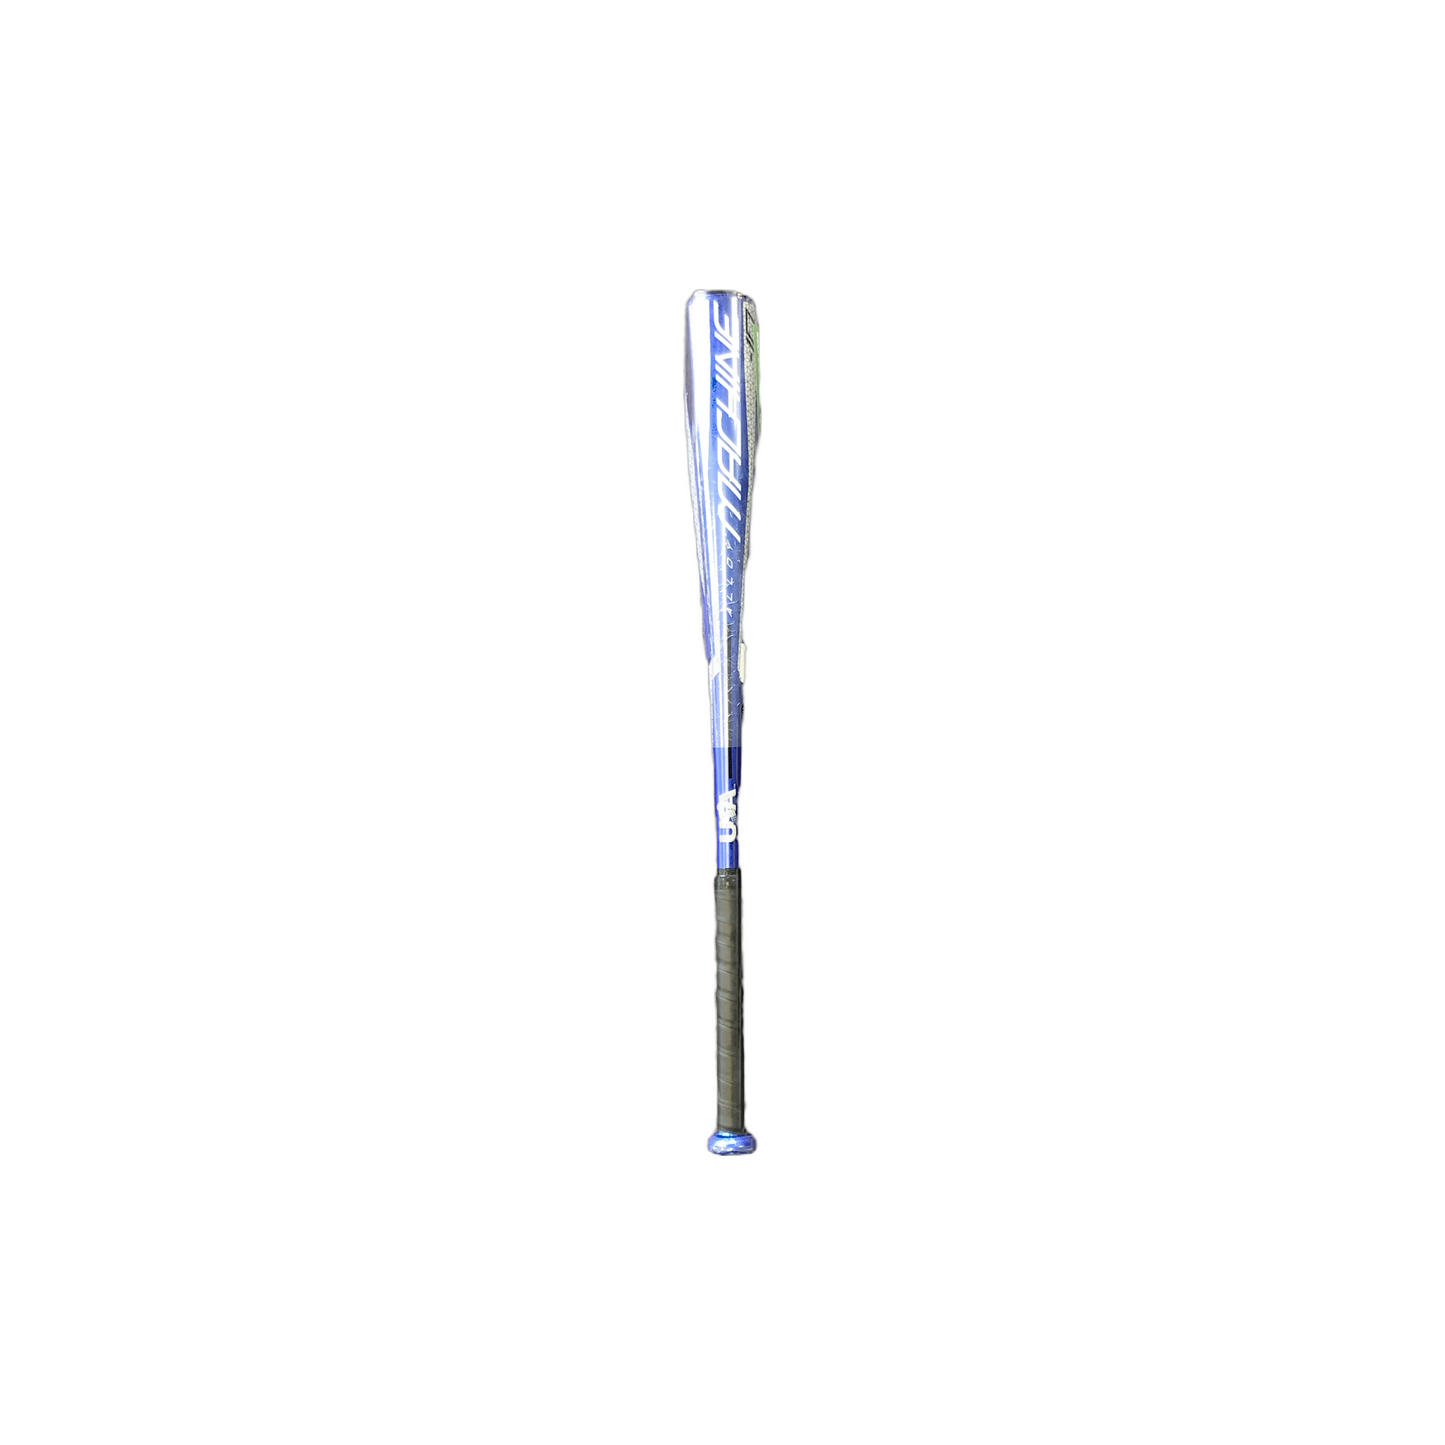 Rawlings MACHINE baseball bat.  Length 28” Diameter 2 ⅝” USMC10